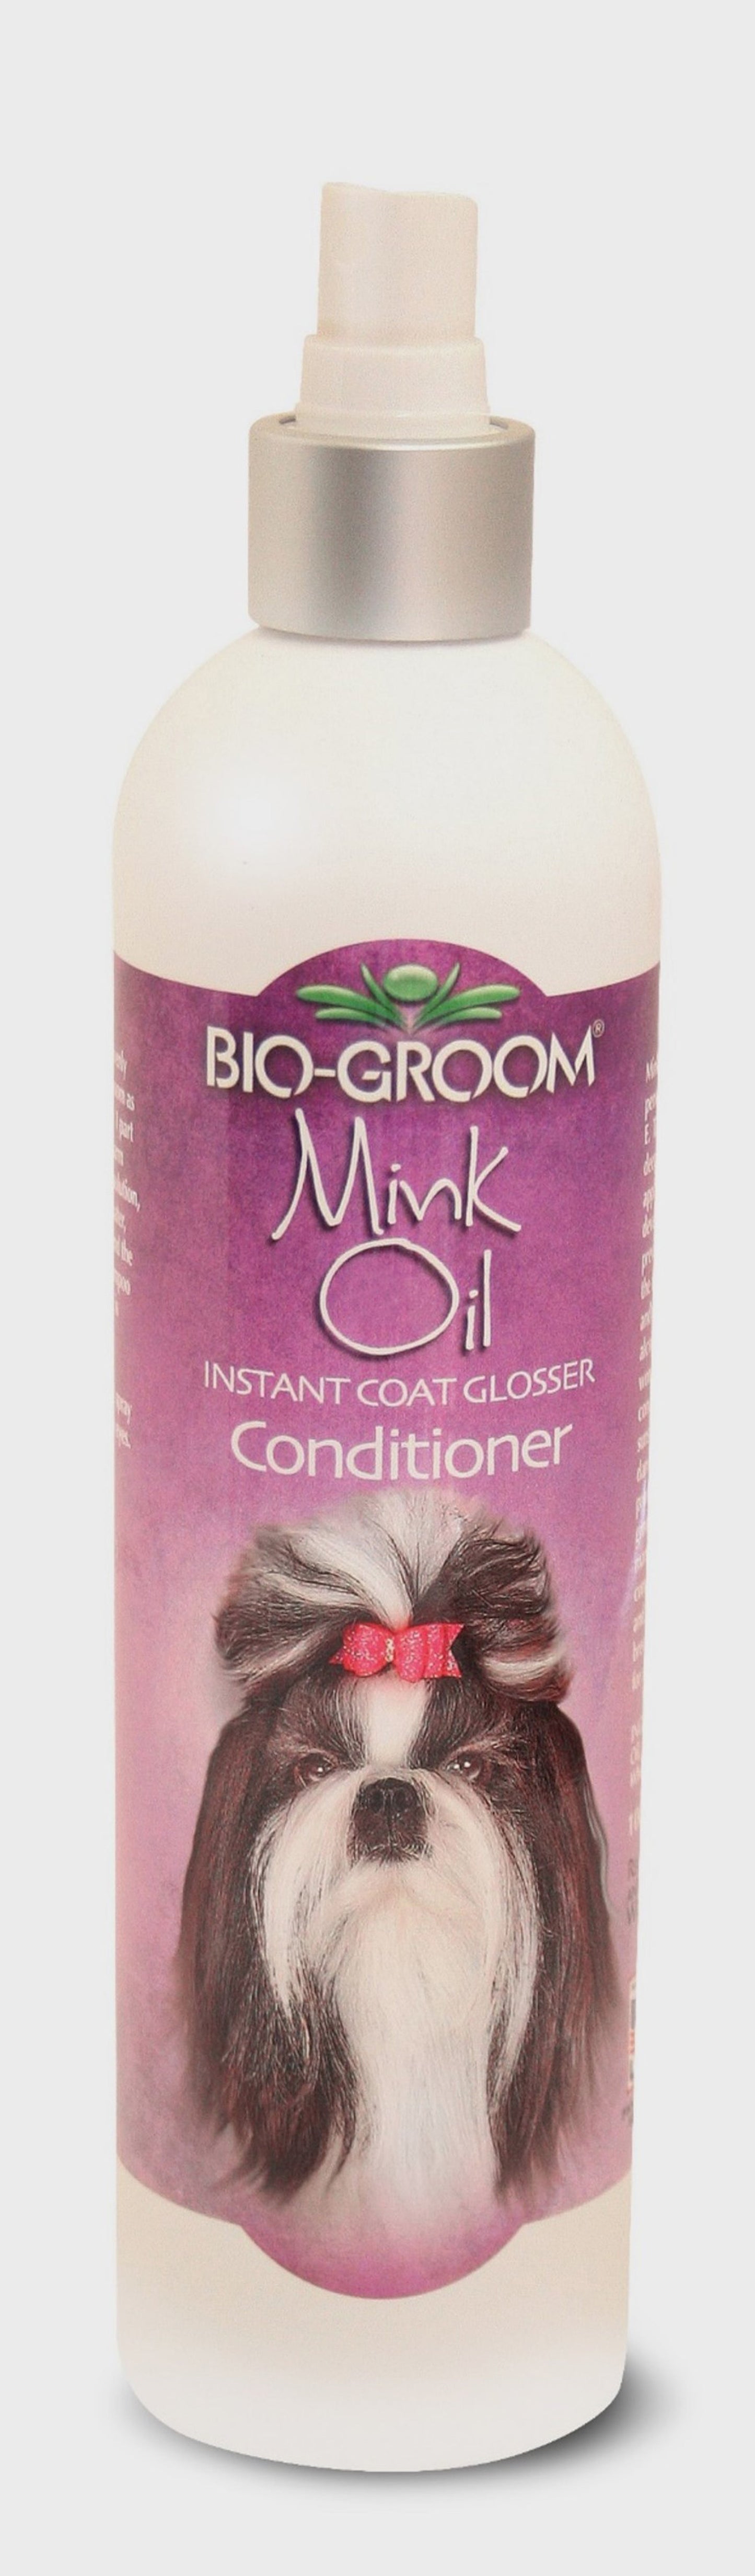 Bio Groom Mink Oil Conditioner Spray 1ea/12 fl oz